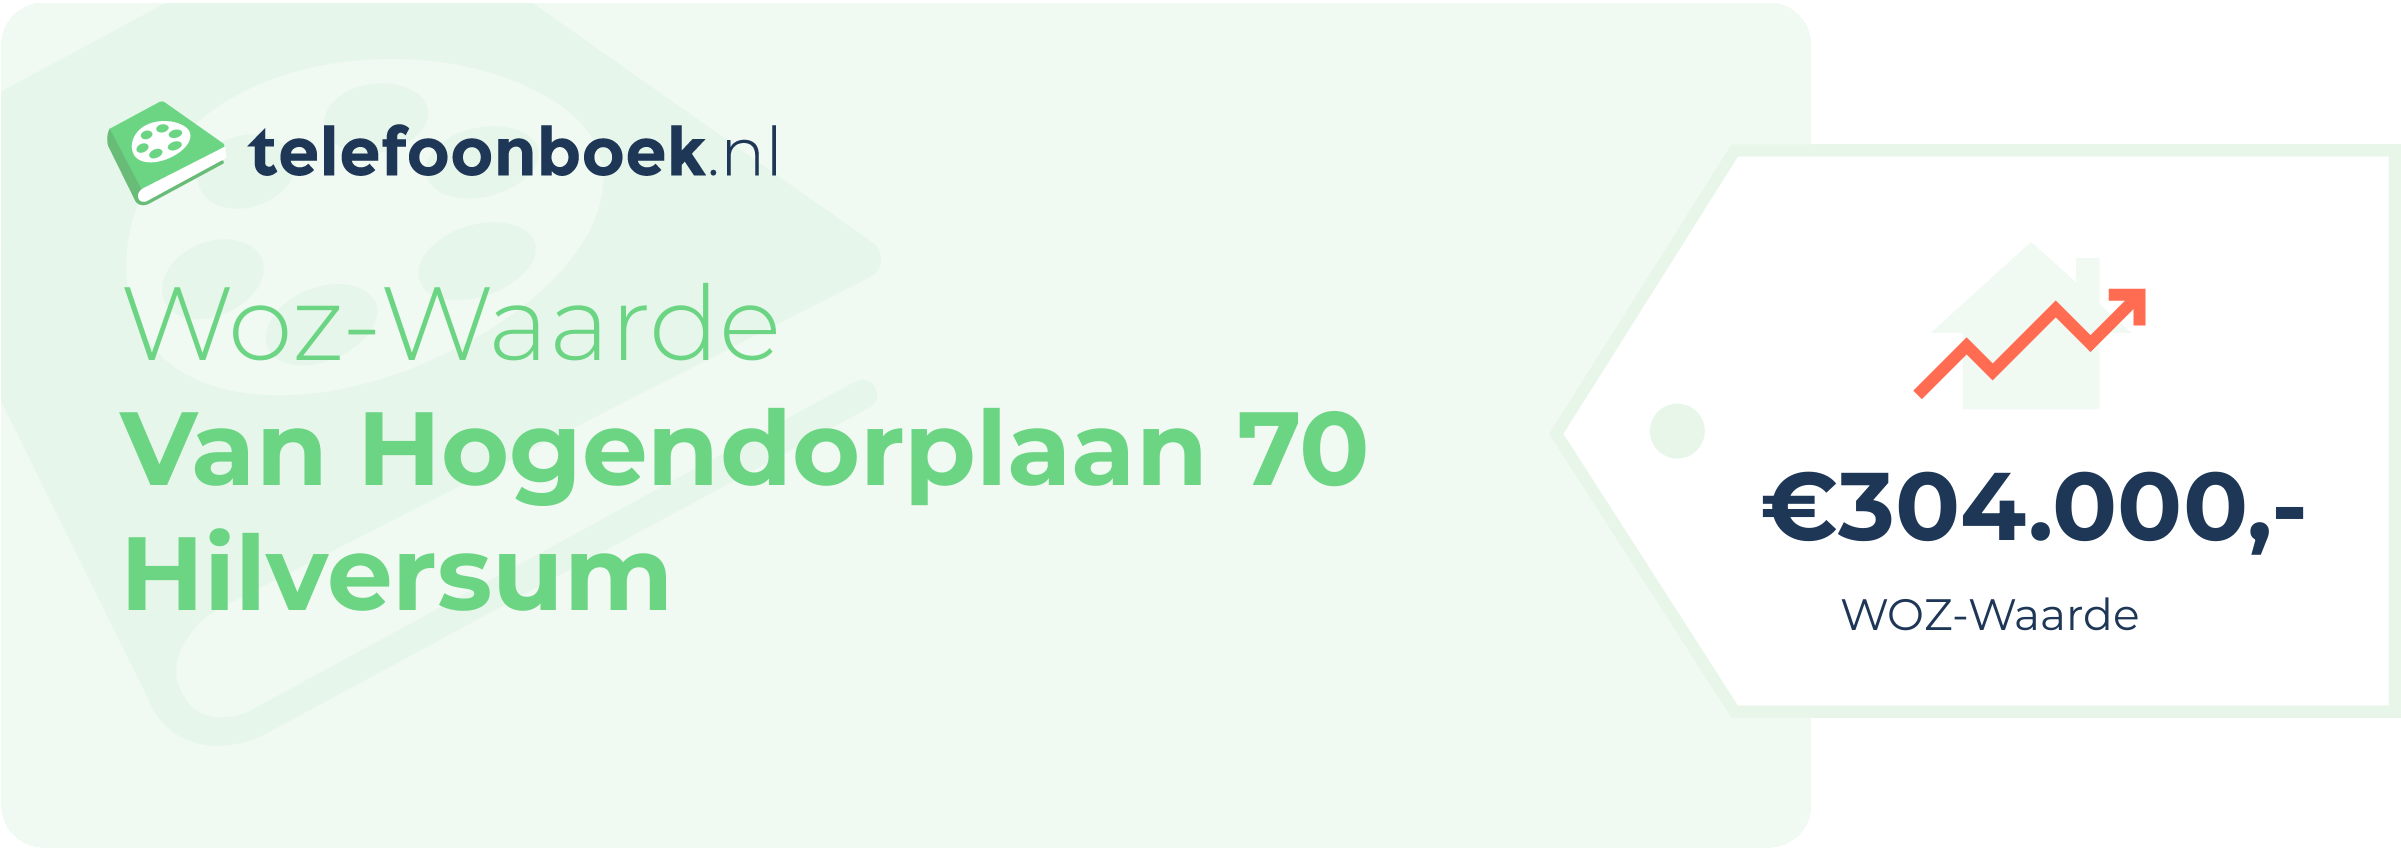 WOZ-waarde Van Hogendorplaan 70 Hilversum